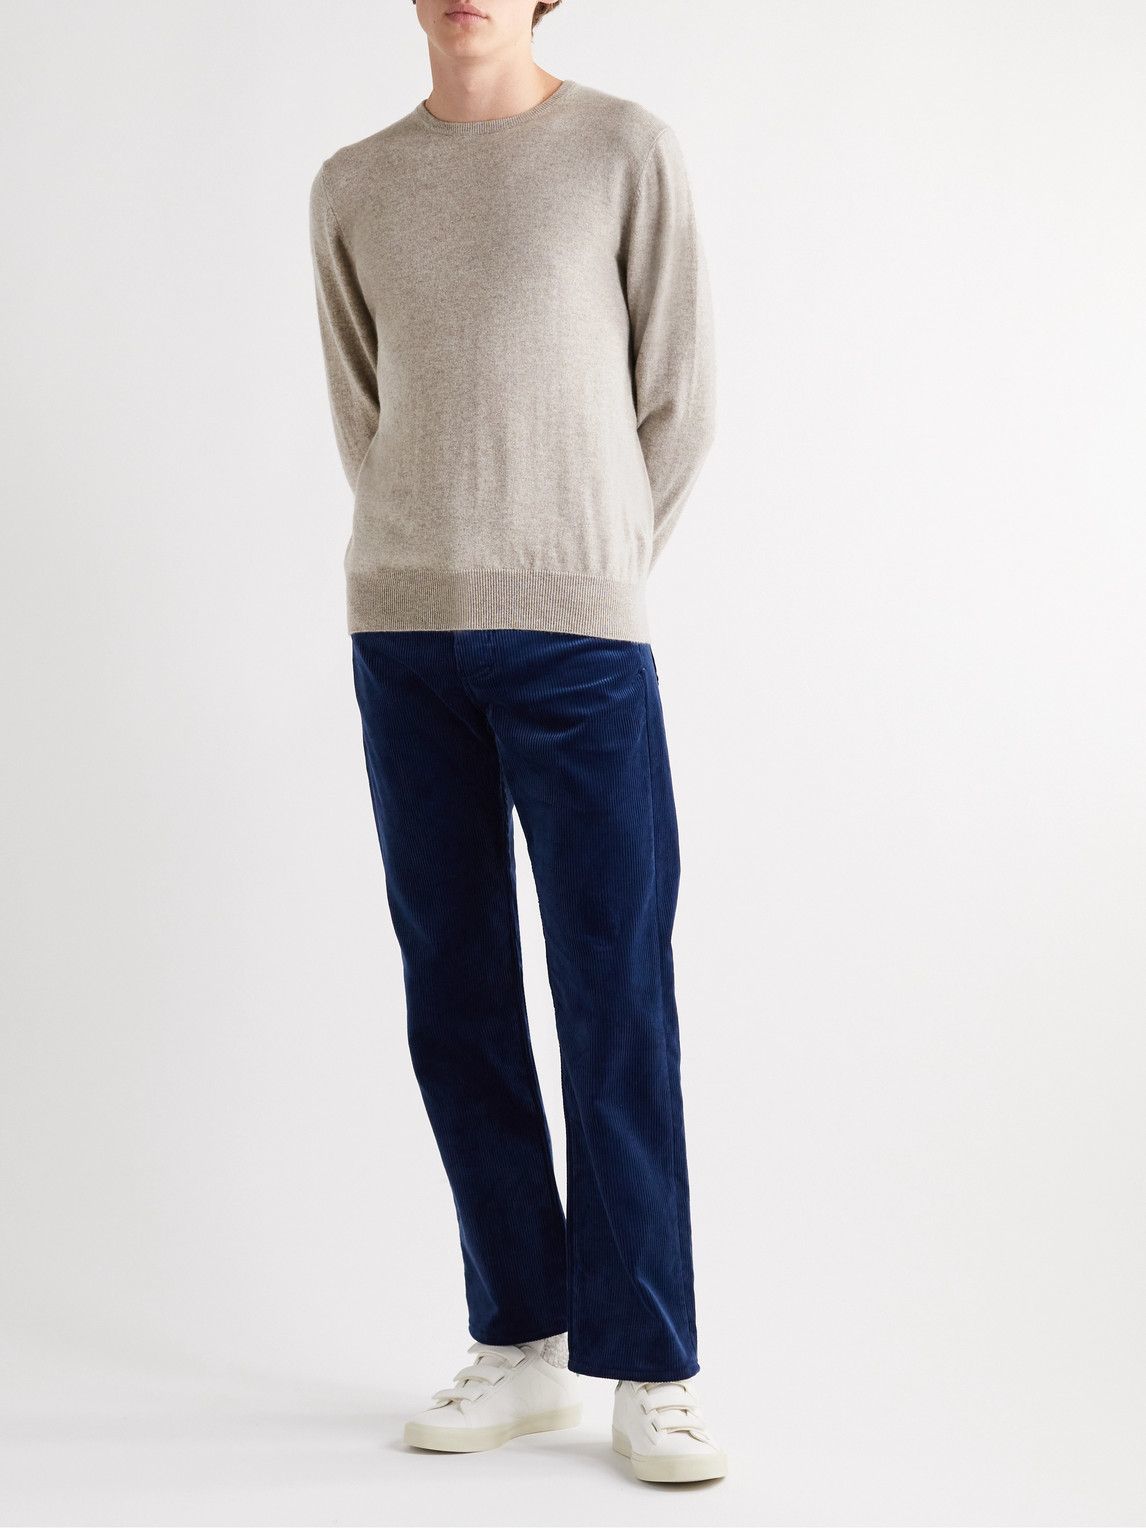 Allude - Cashmere Sweater - Neutrals